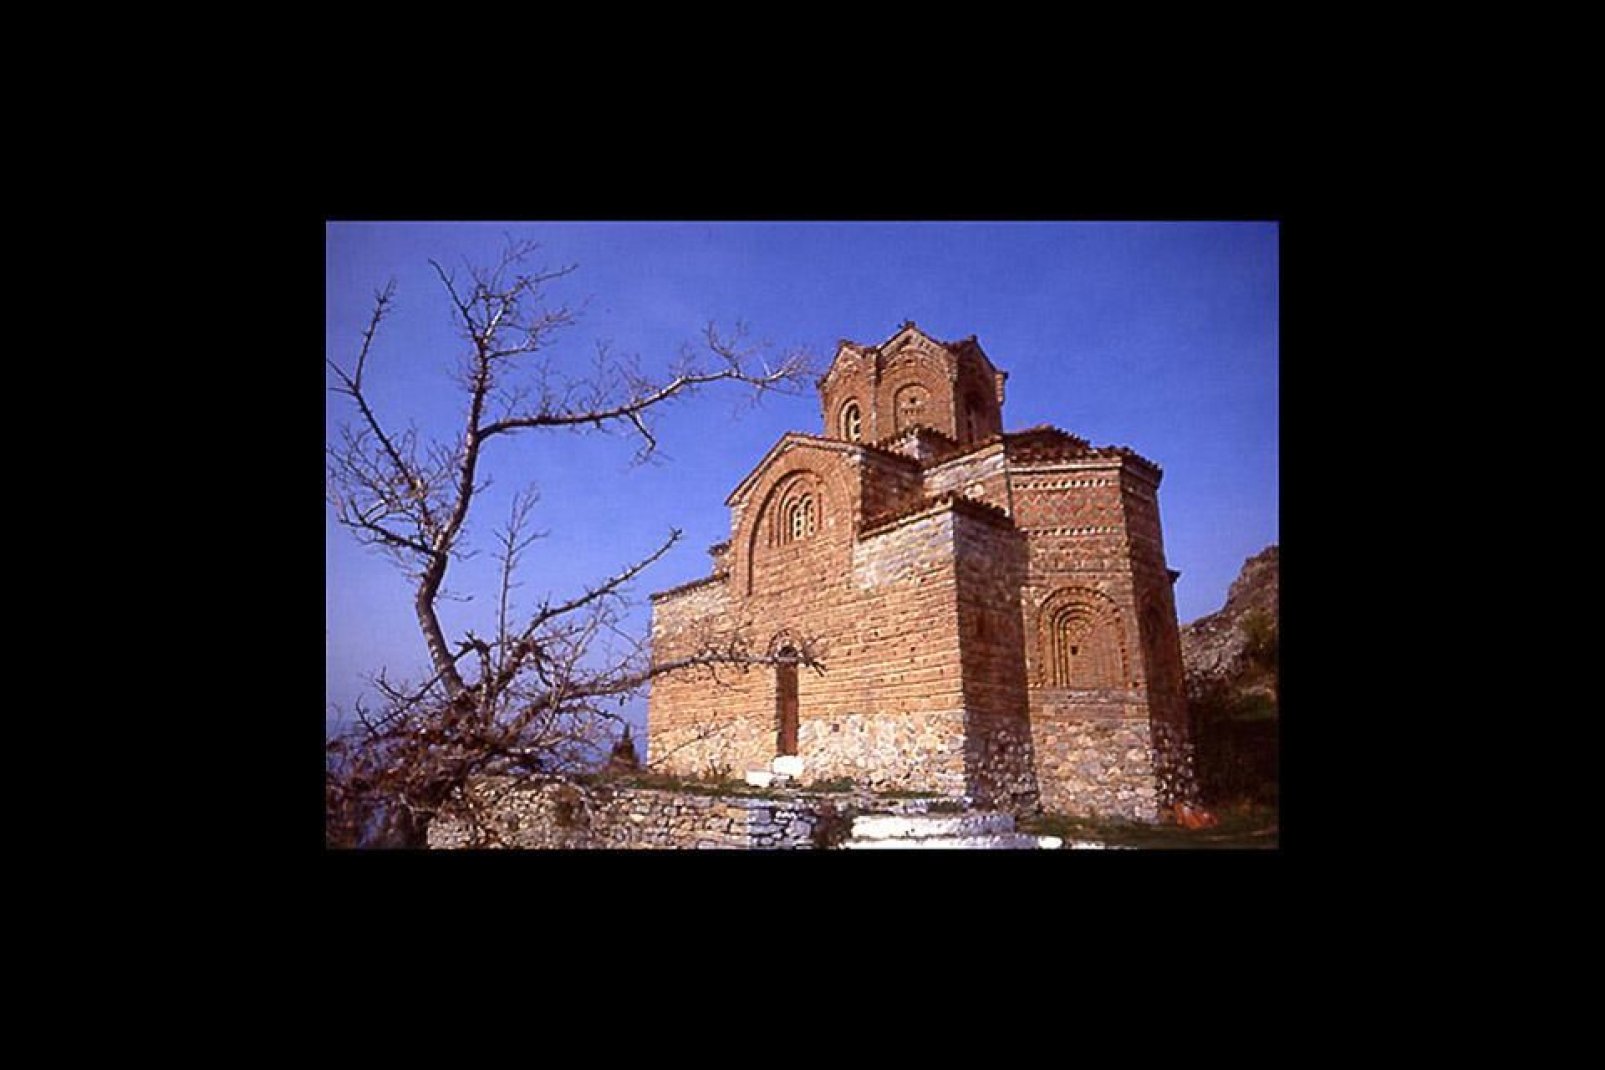 Esta ciudad de Macedonia ha sido incluida por la Unesco en la lista de patrimonios que hay que conservar. Entre sus bellezas destaca la iglesia de San Jovan.